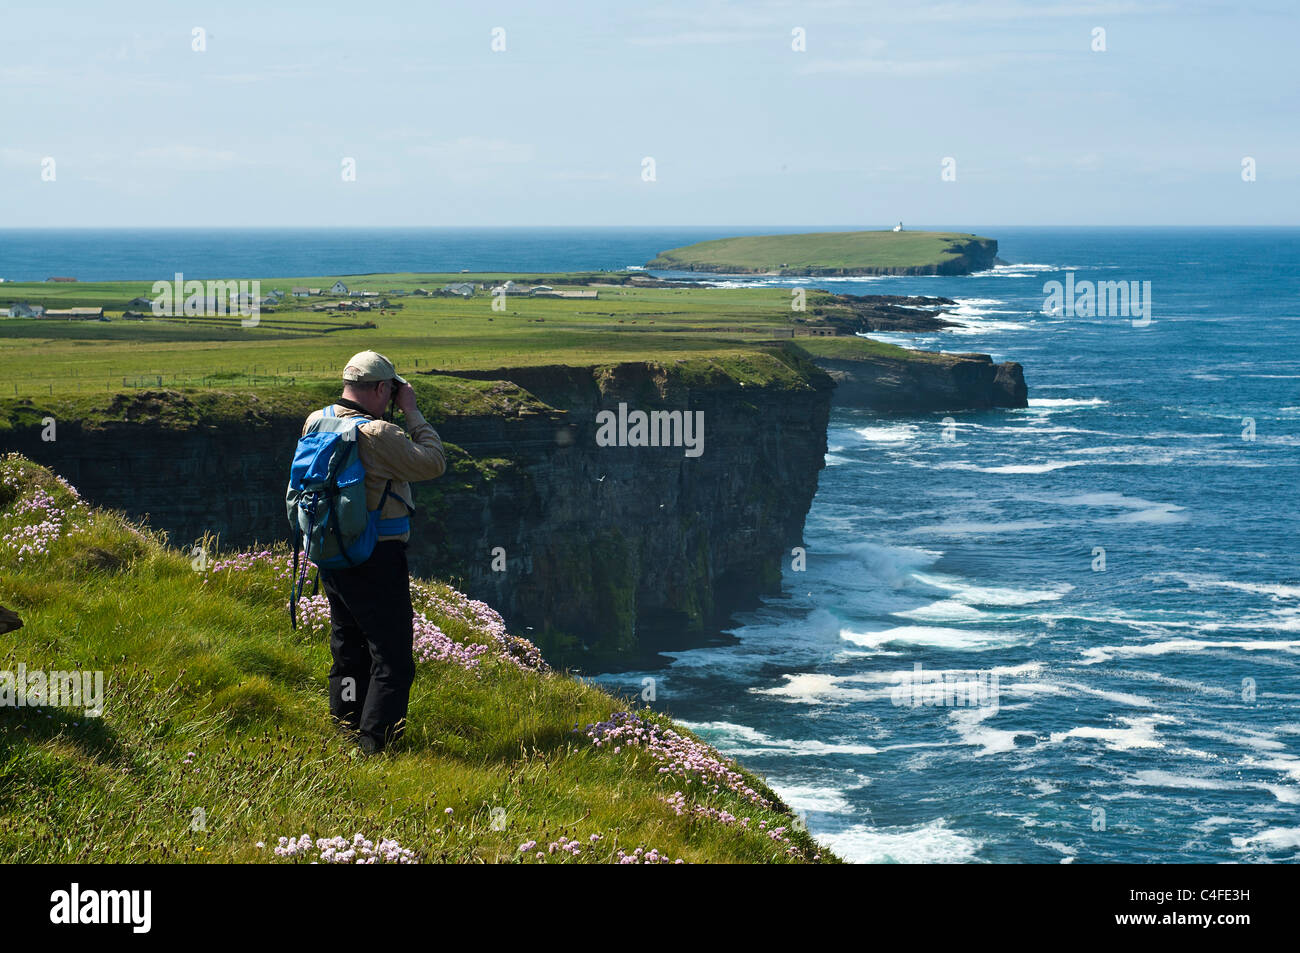 dh Scottish seacliffs été BIRSAY ORKNEY ornithologue observateur d'oiseaux Oiseaux homme falaise jumelles bord de côte Royaume-Uni ecosse Banque D'Images